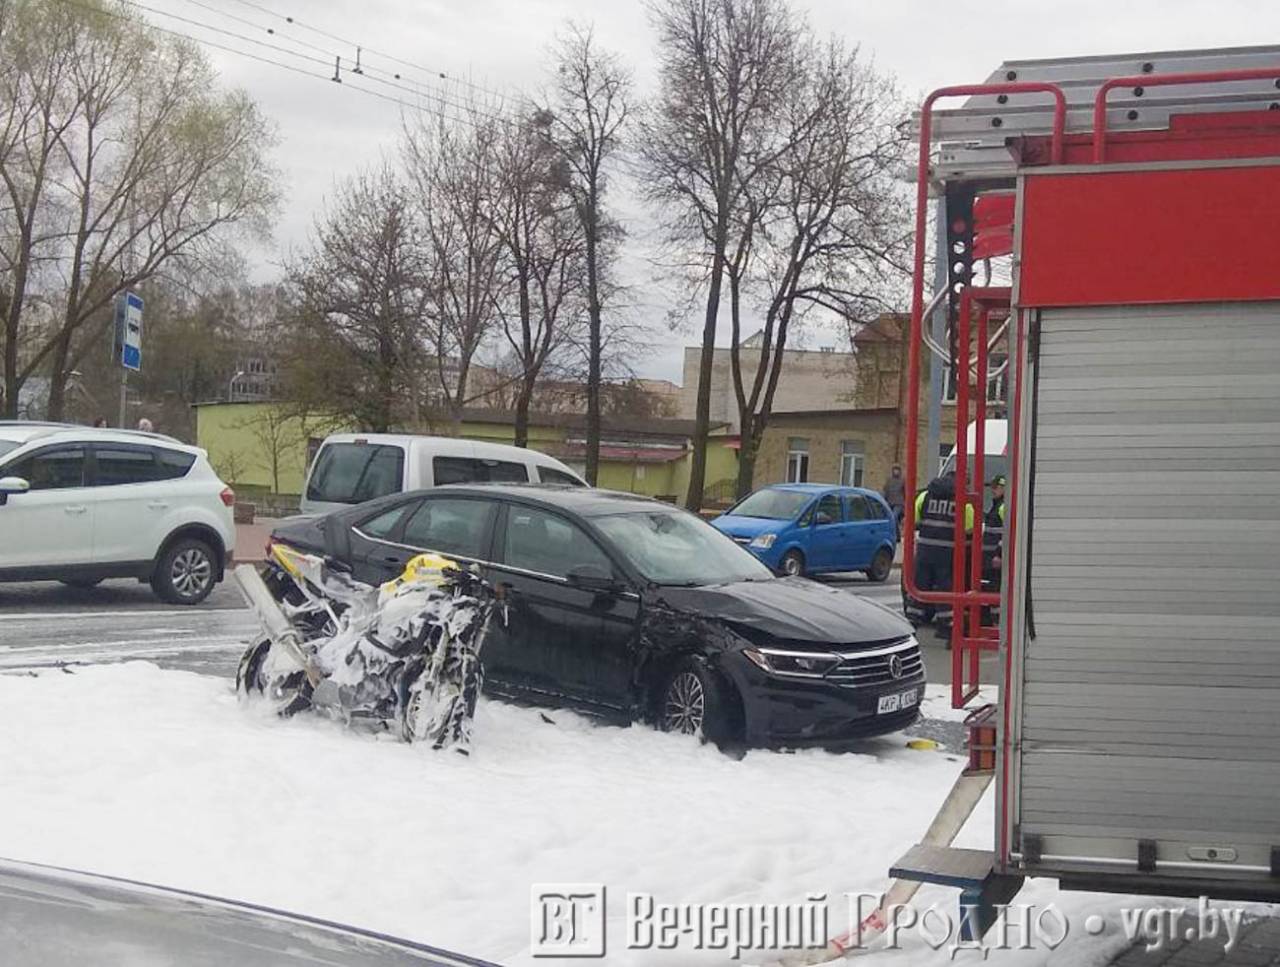 Серьезная авария в центре Гродно: столкнулись авто и мотоцикл